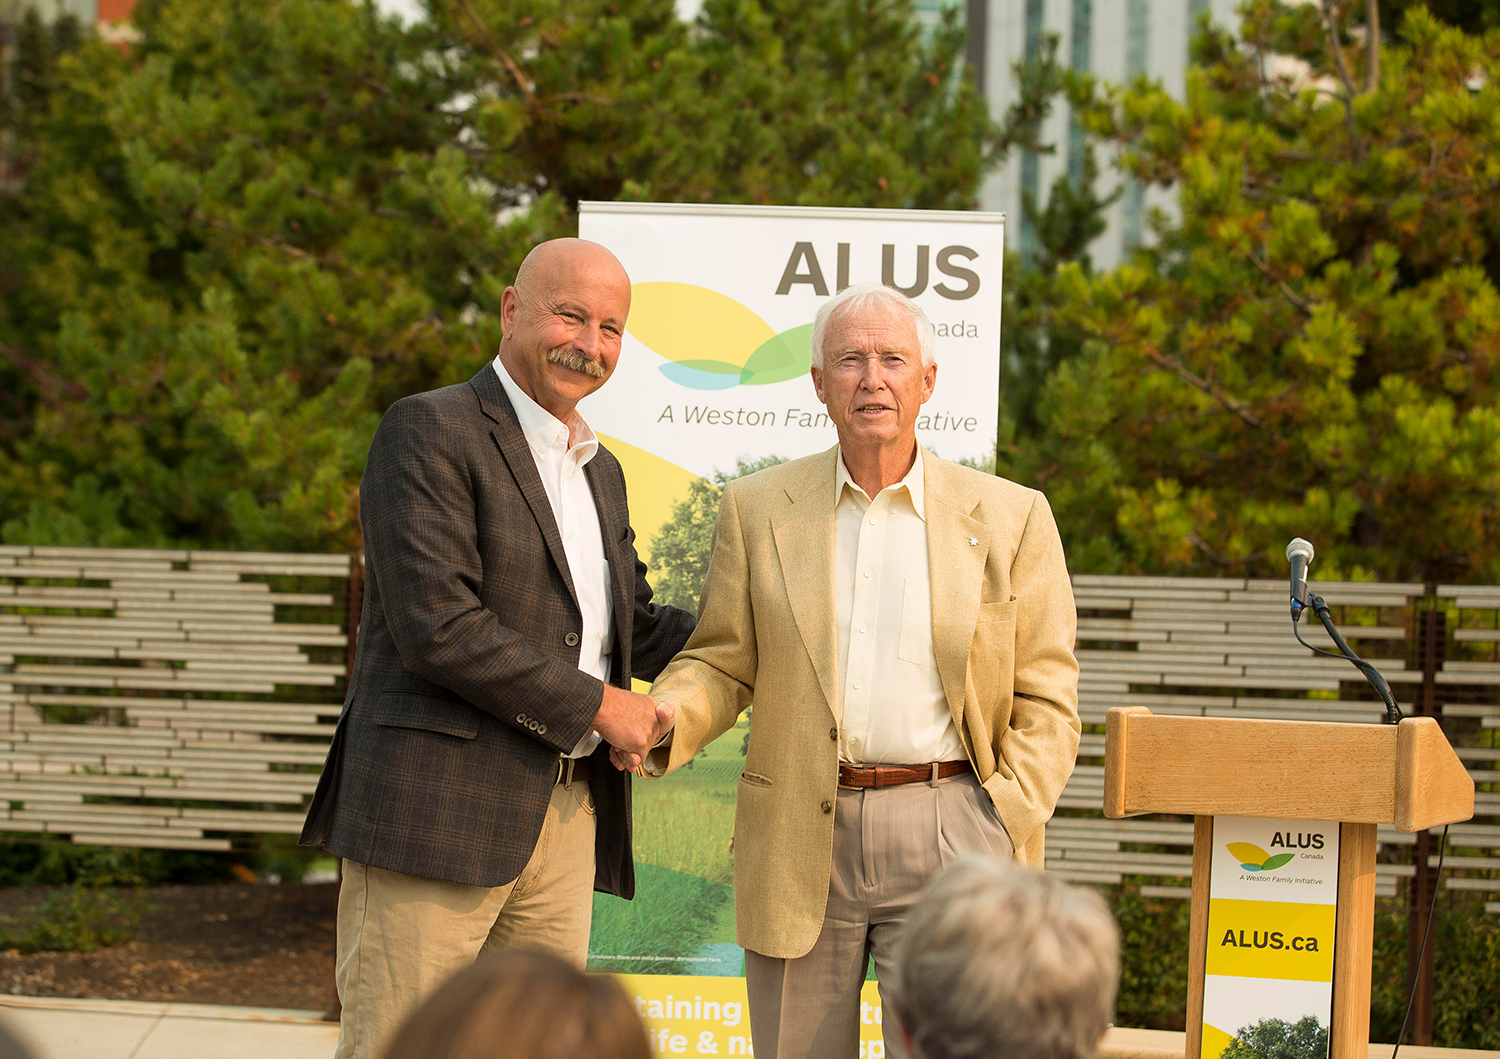 Alberta philanthropist David Bissett and ALUS Canada, a Weston Family Initiative